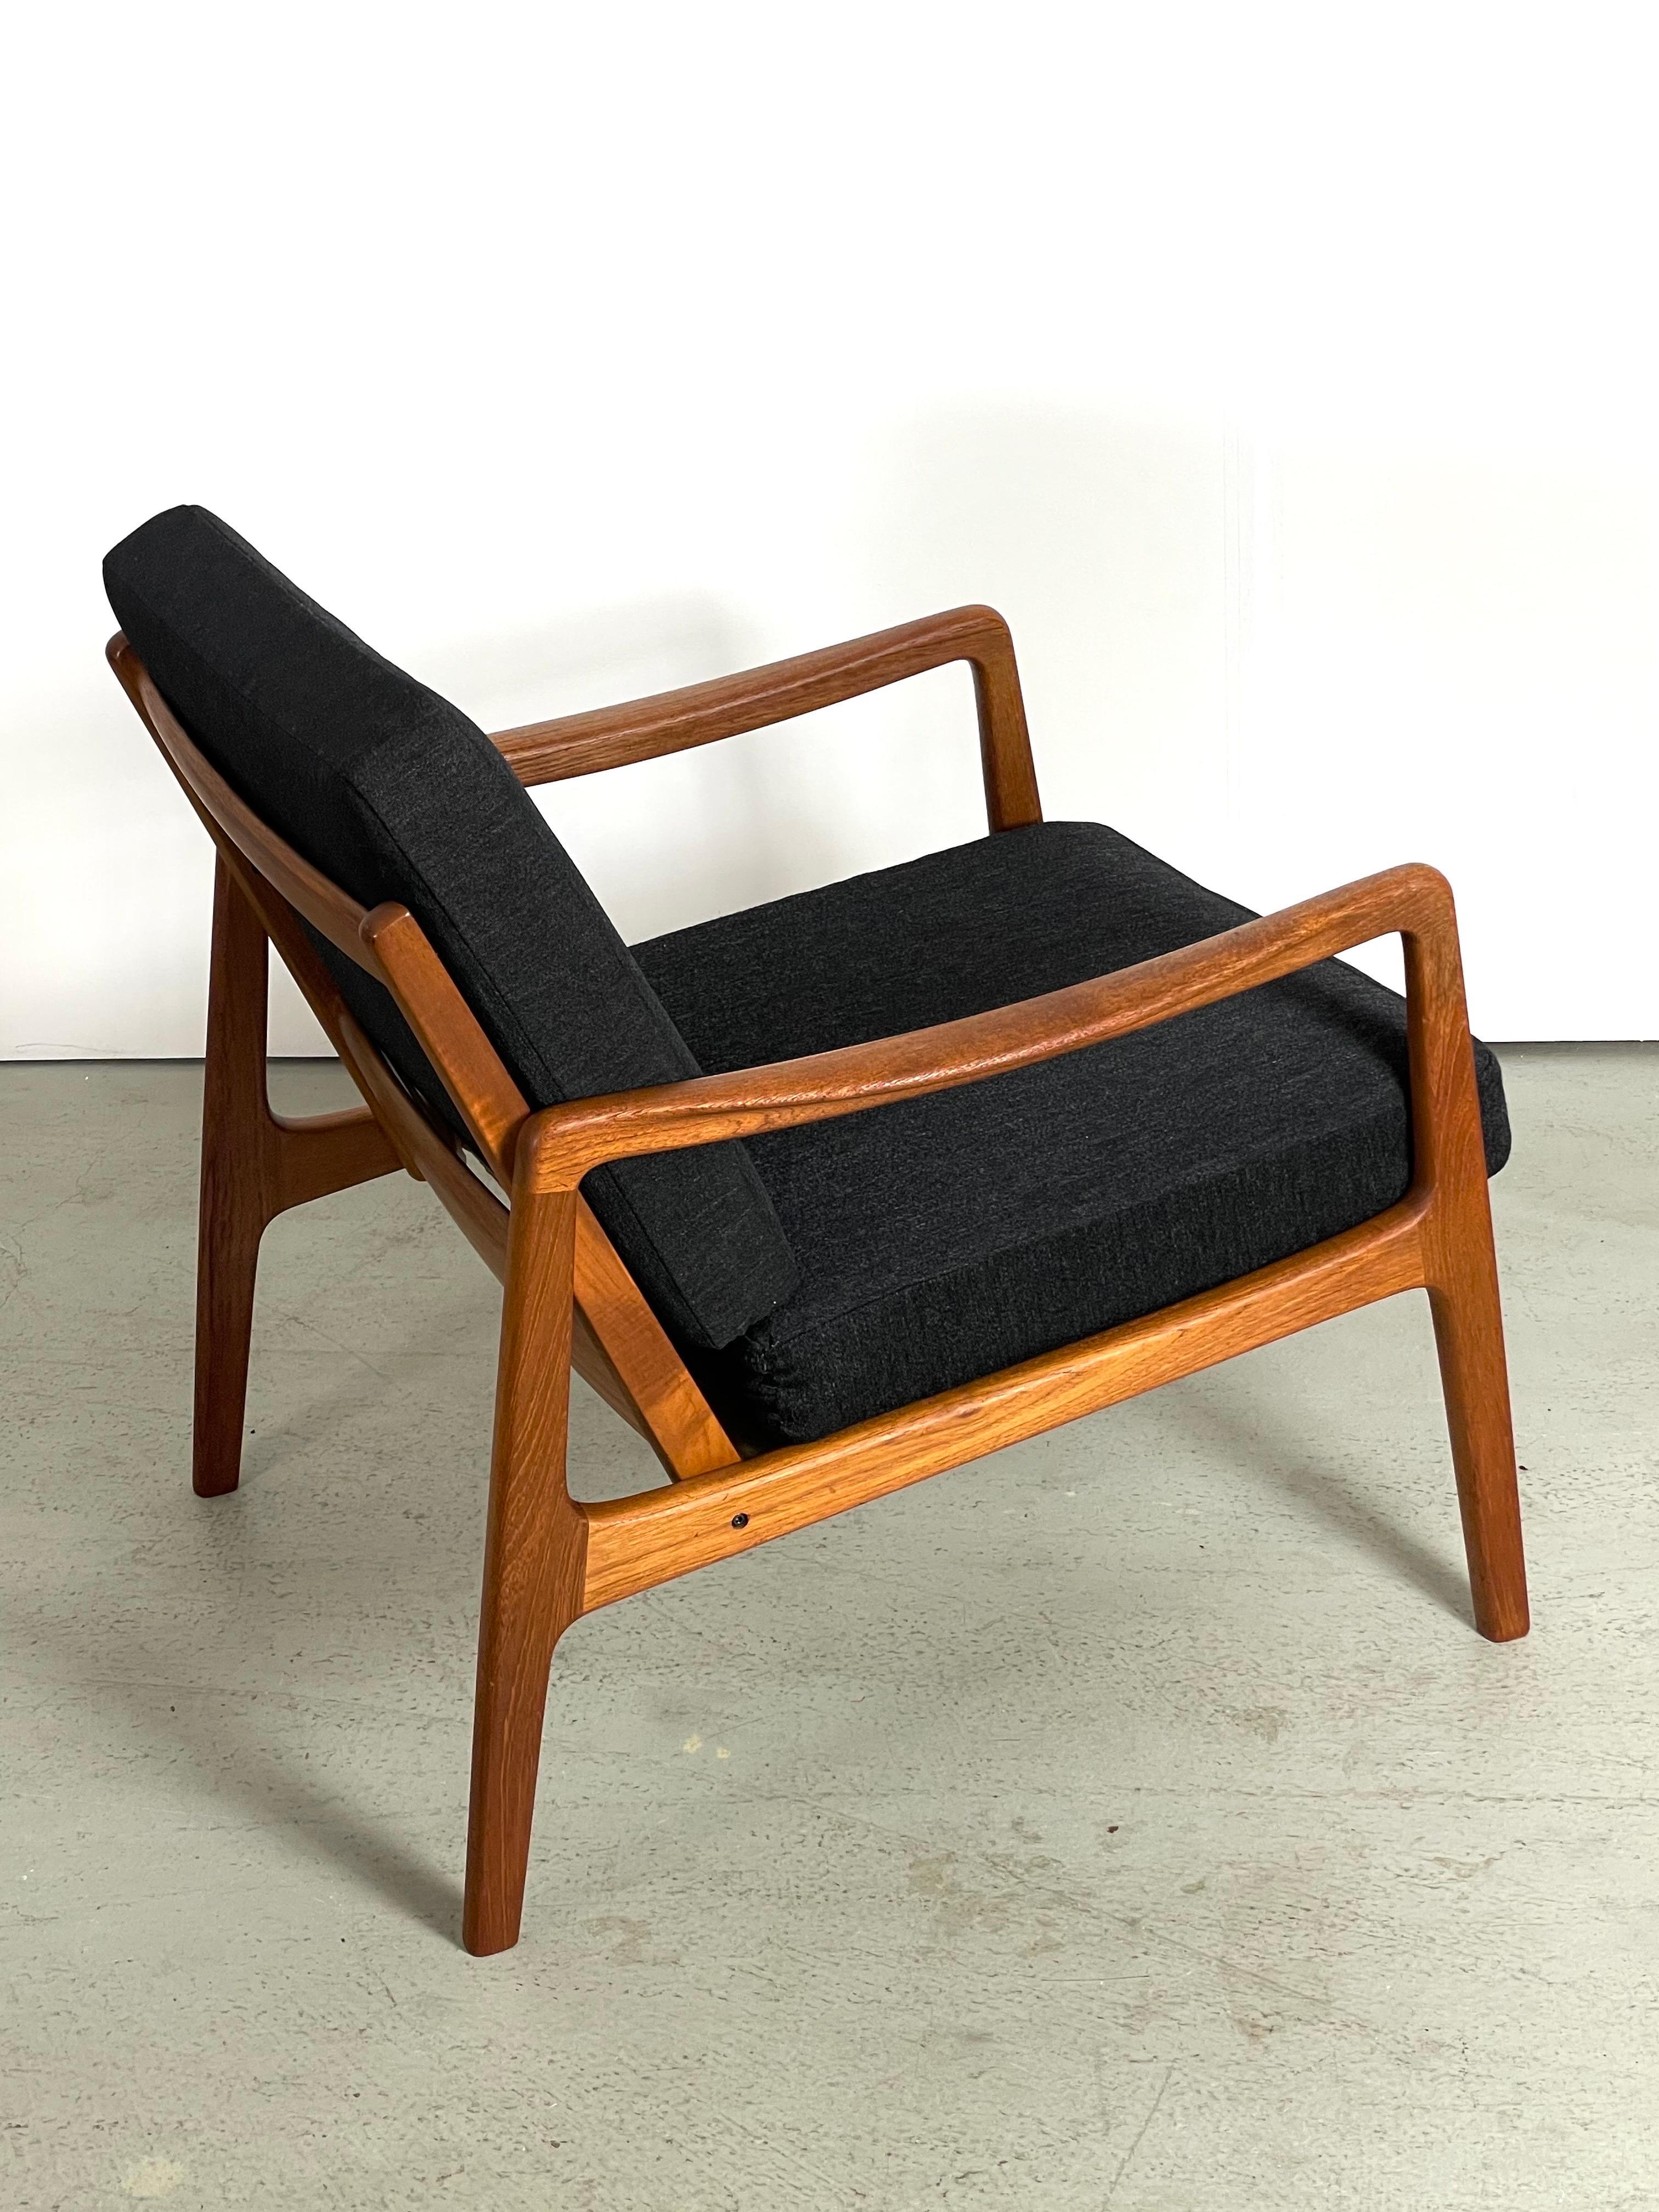 Fauteuil de style Midcentury conçu par le professeur danois Ole Wanscher. Fabriqué au Danemark par France & Søn dans les années 1950. Ce modèle vintage rare de chaise longue FD-109 porte la marque du fabricant et présente un cadre solide en bois de